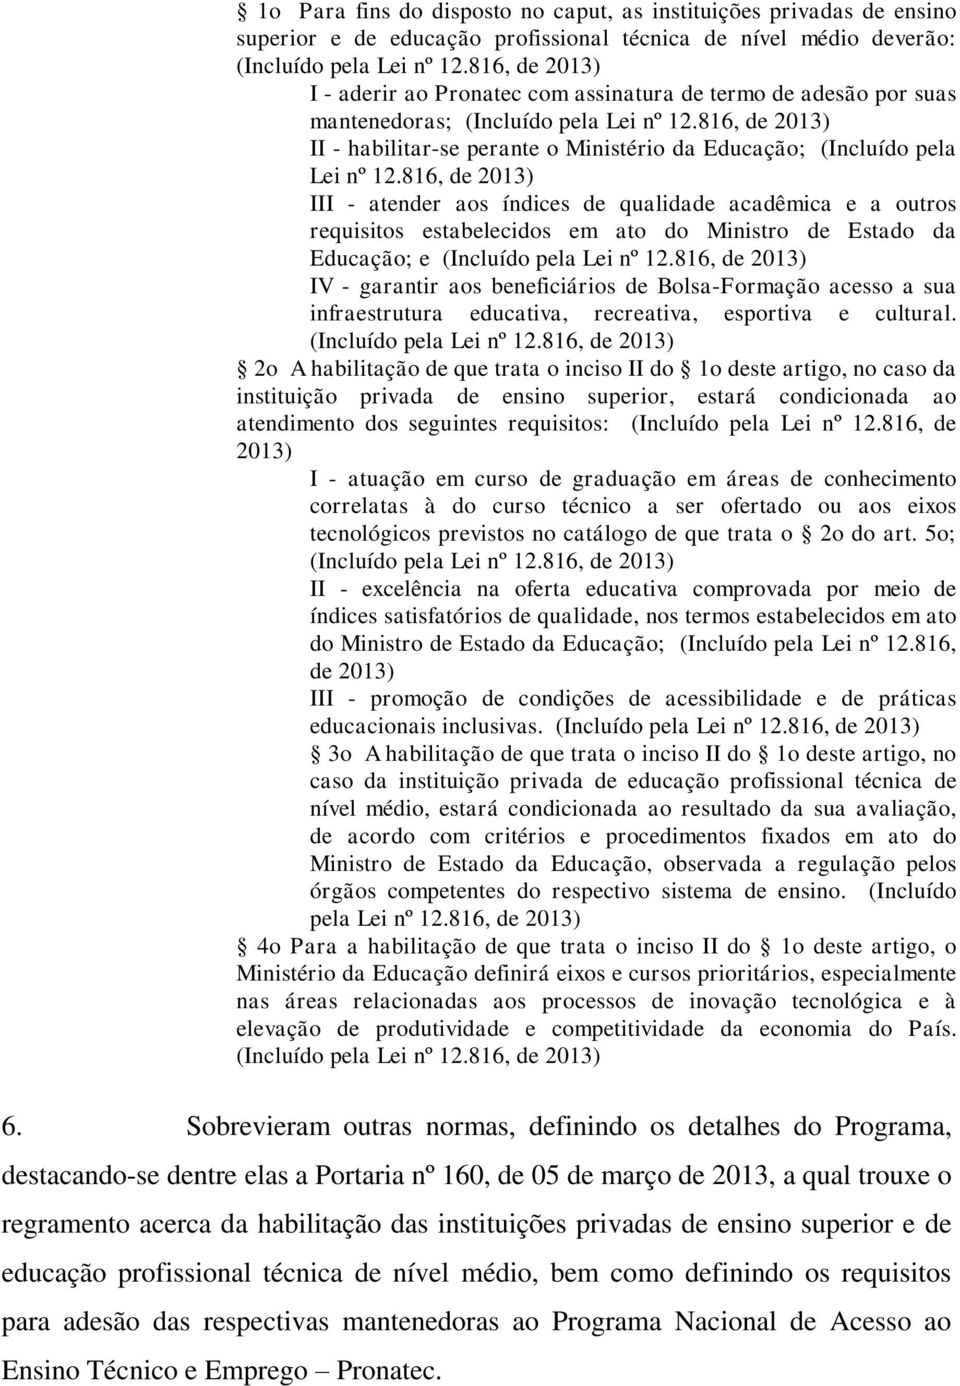 816, de 2013) II - habilitar-se perante o Ministério da Educação; (Incluído pela Lei nº 12.